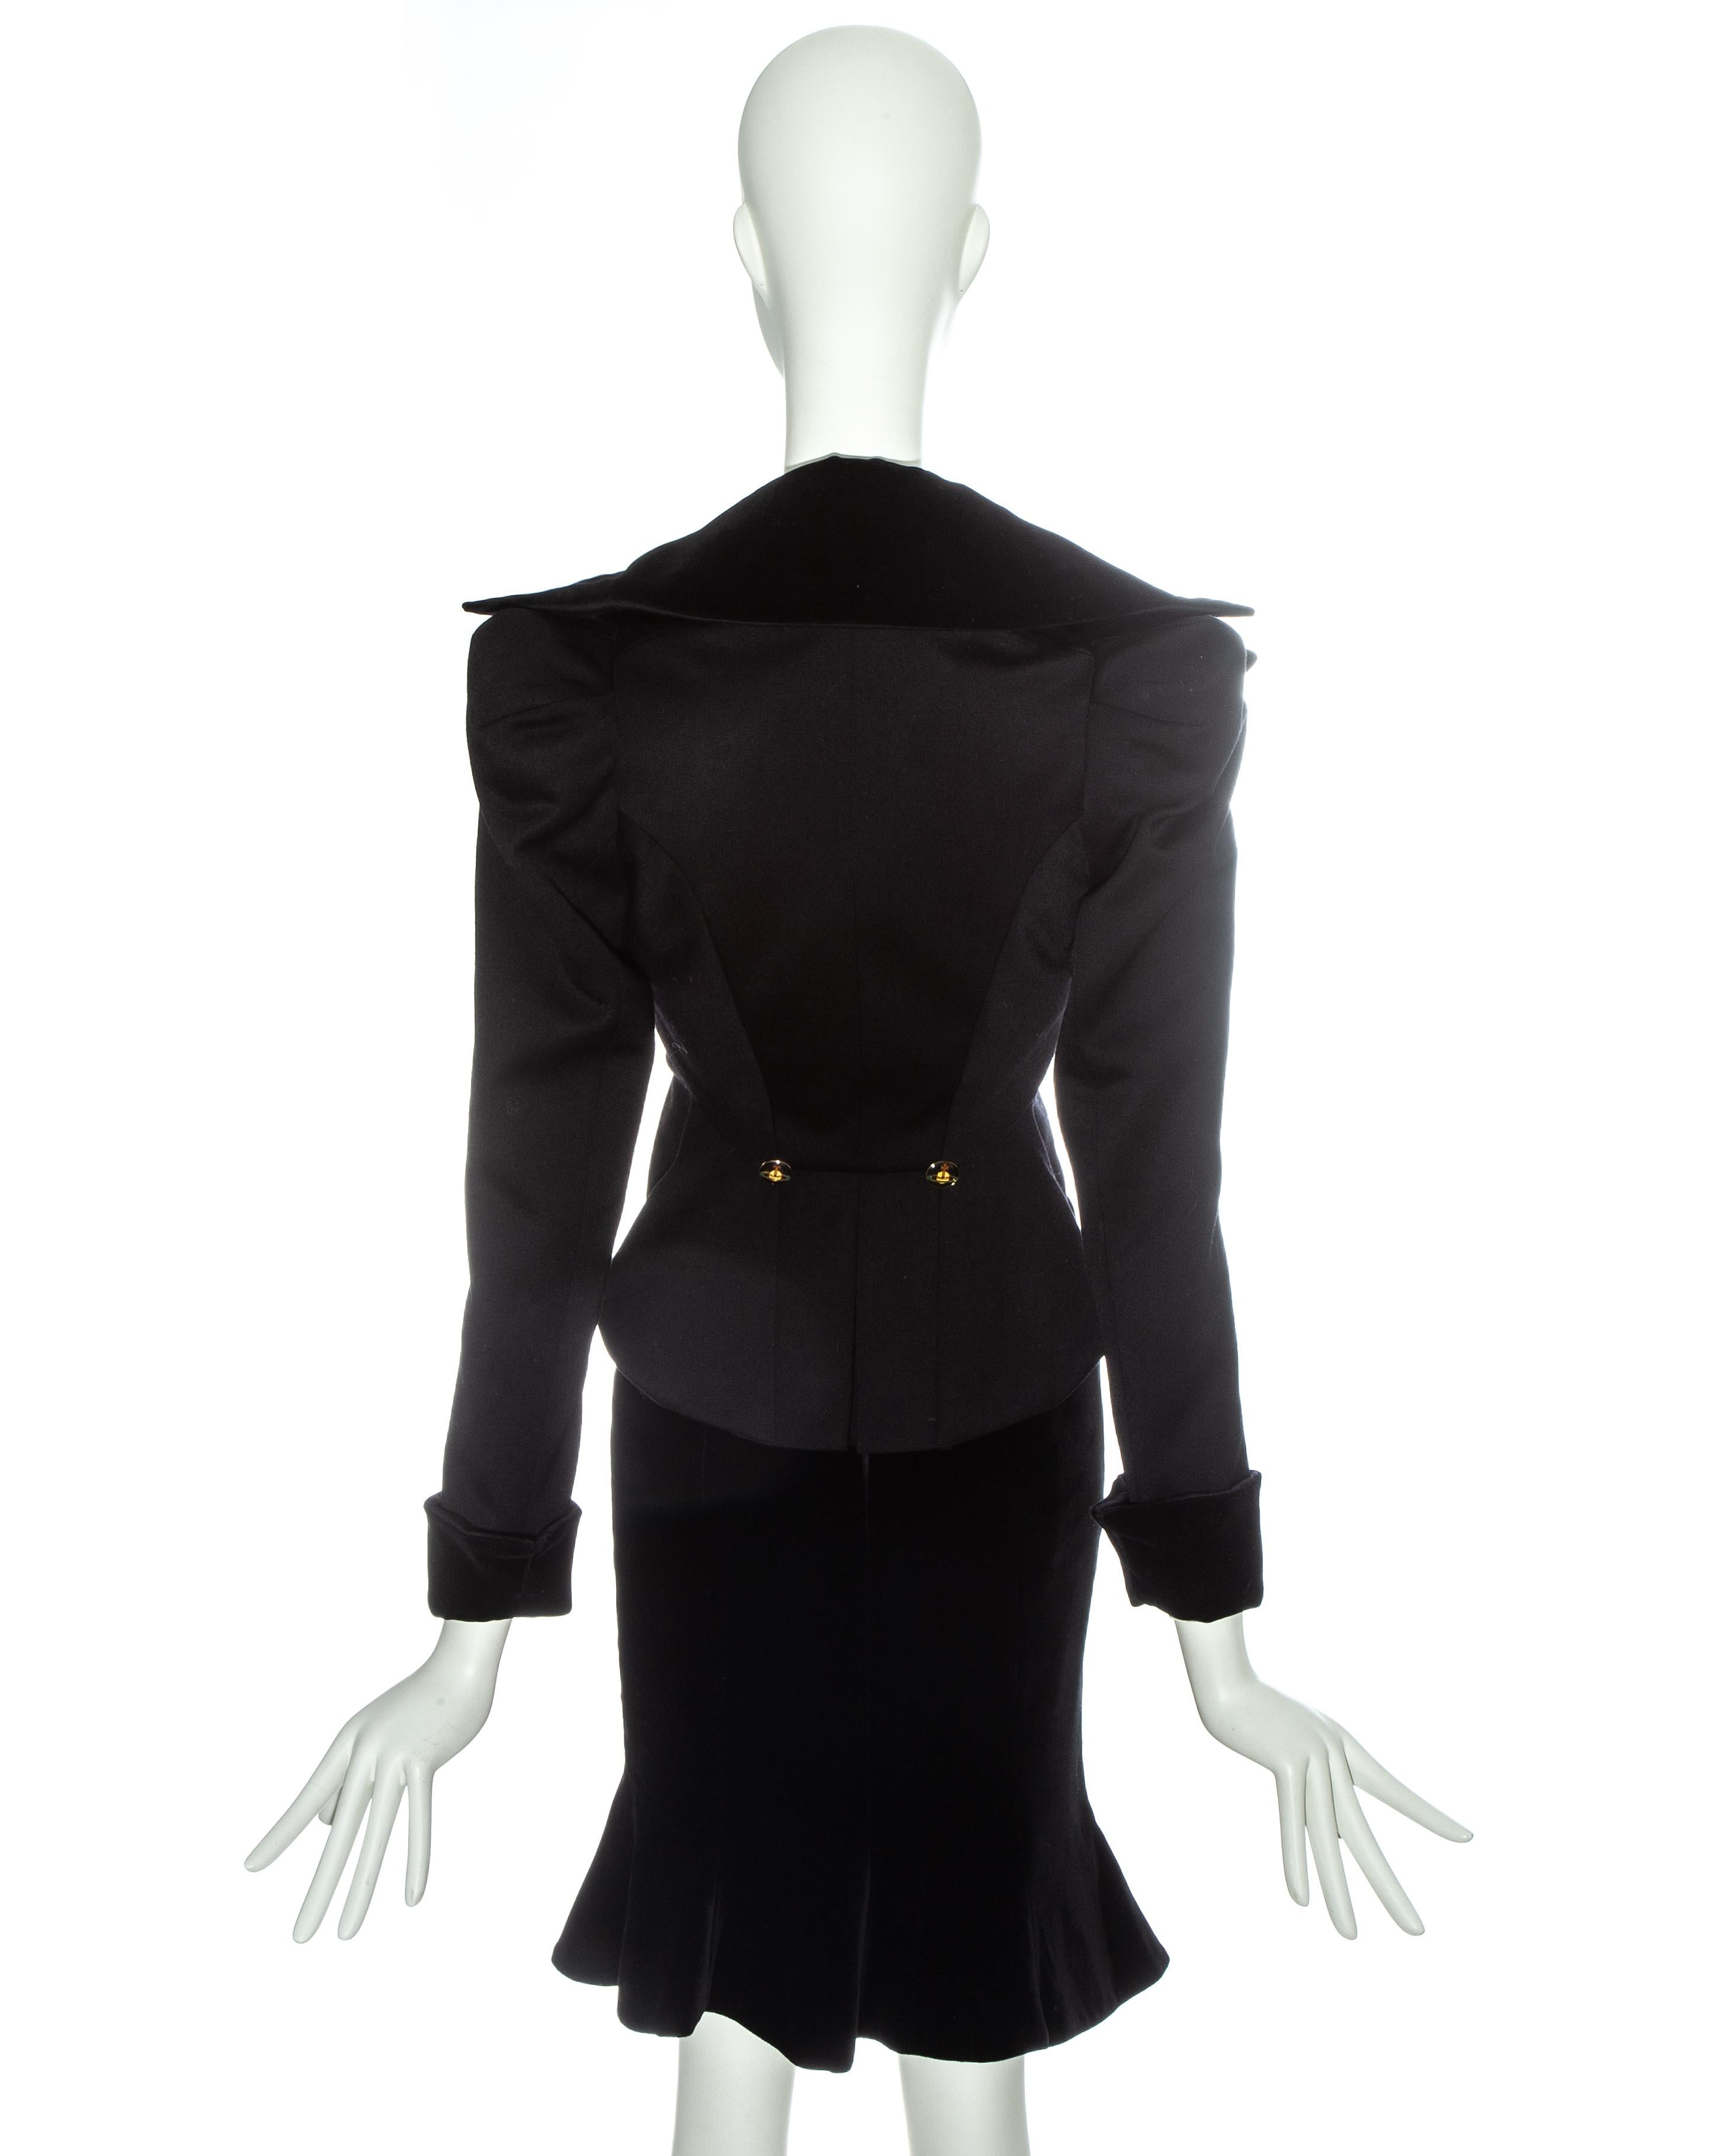 Women's Vivienne Westwood black velvet 'Vive La Cocotte' corseted skirt suit, fw 1995